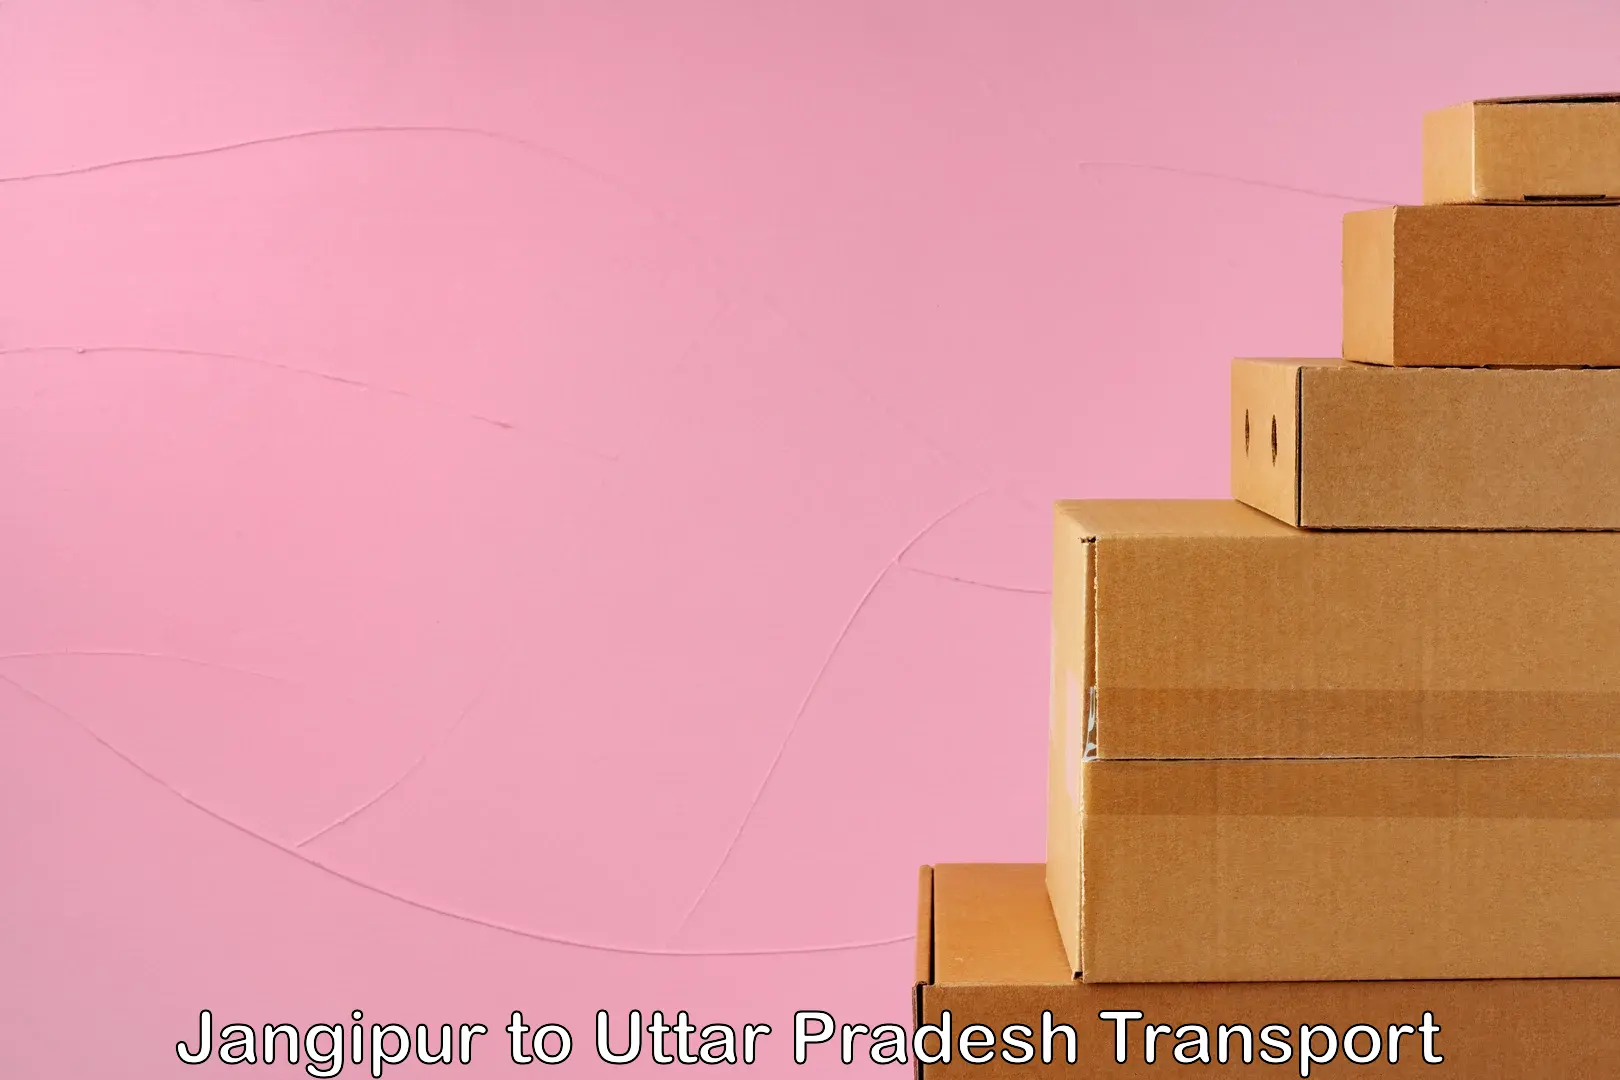 Shipping services Jangipur to Prayagraj